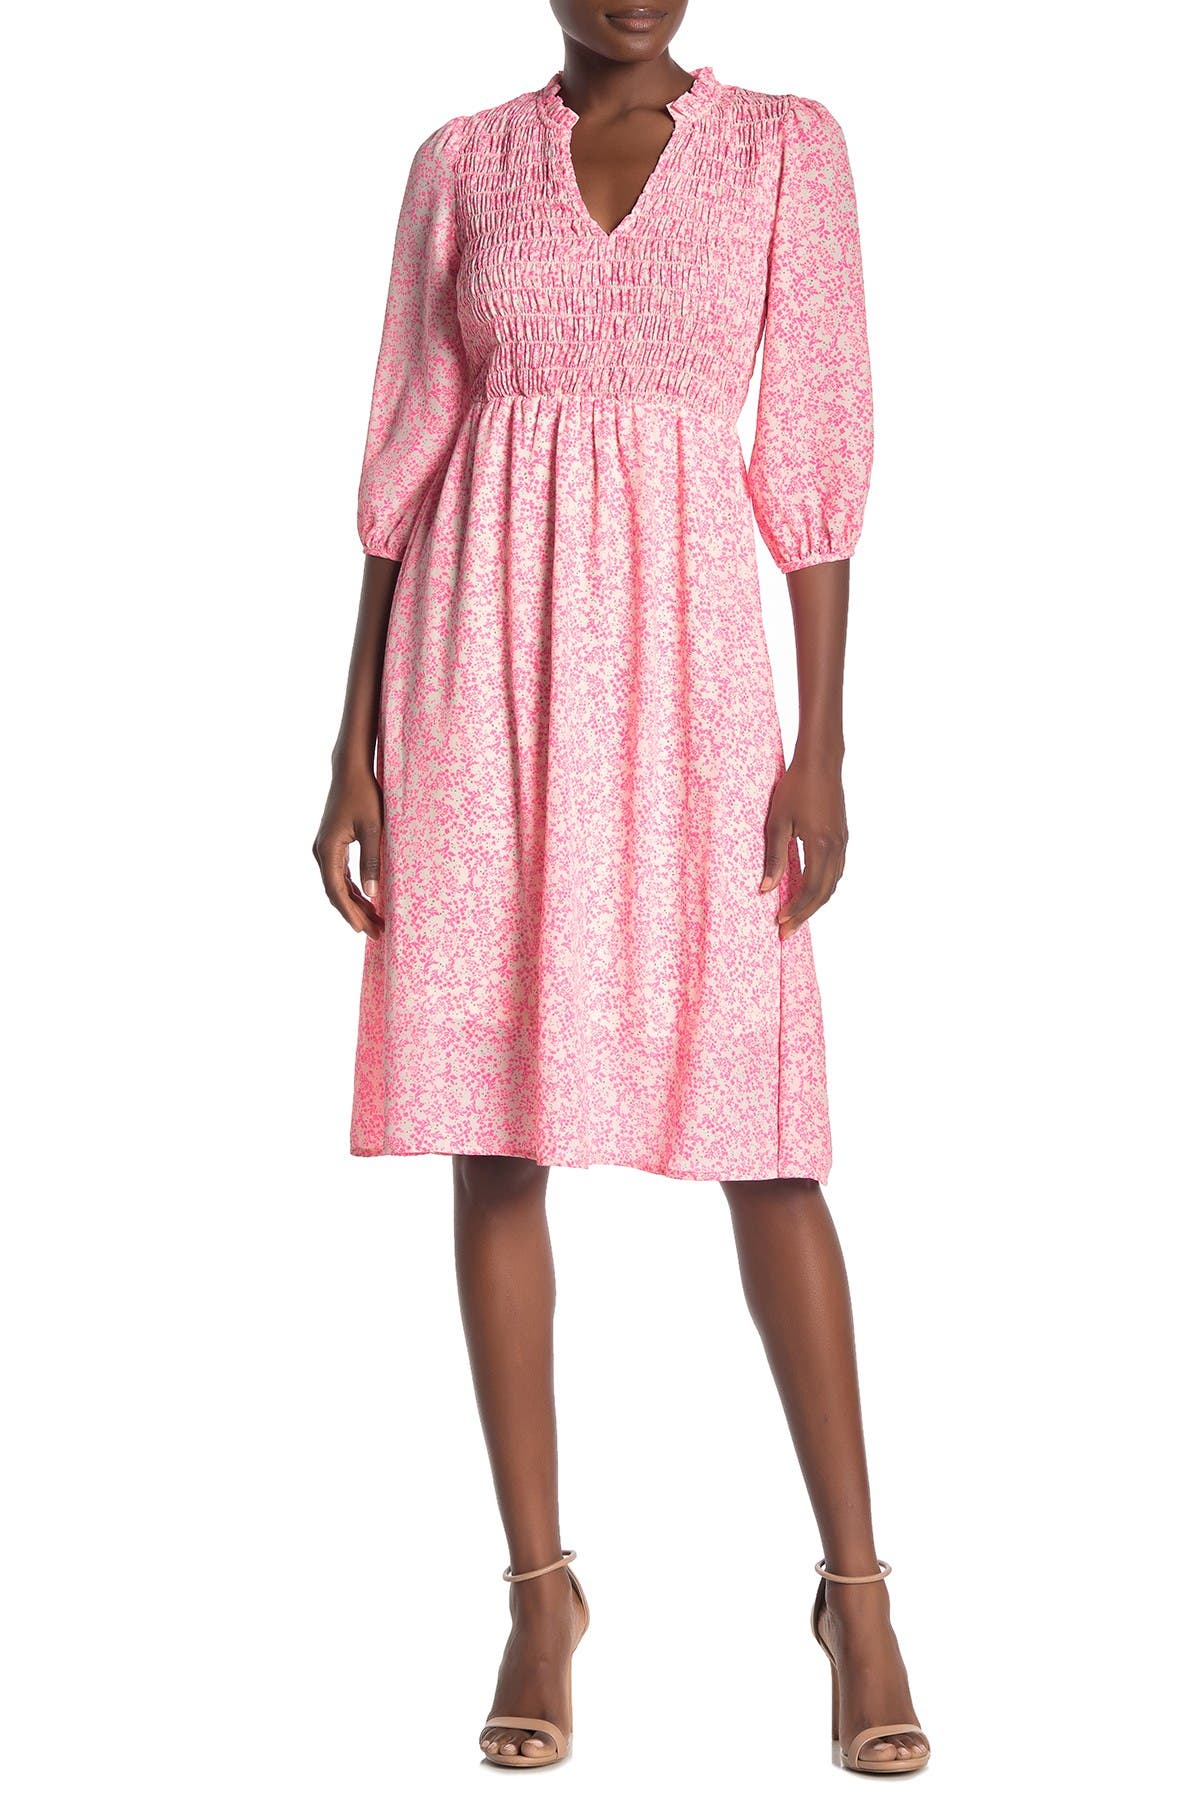 nordstrom rack pink dress